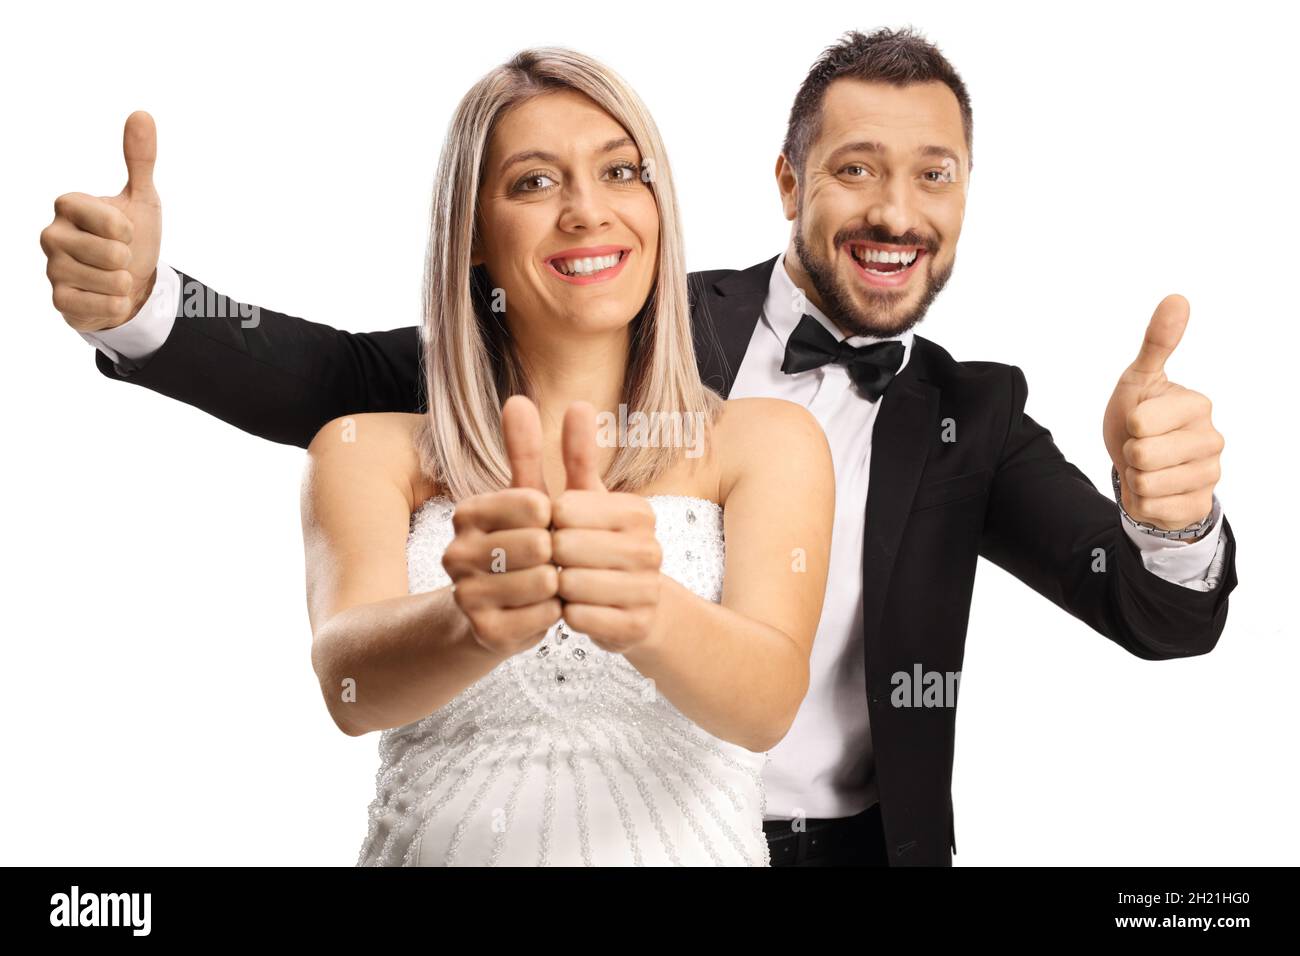 Mariée et marié joyeux montrant les pouces isolés sur fond blanc Banque D'Images